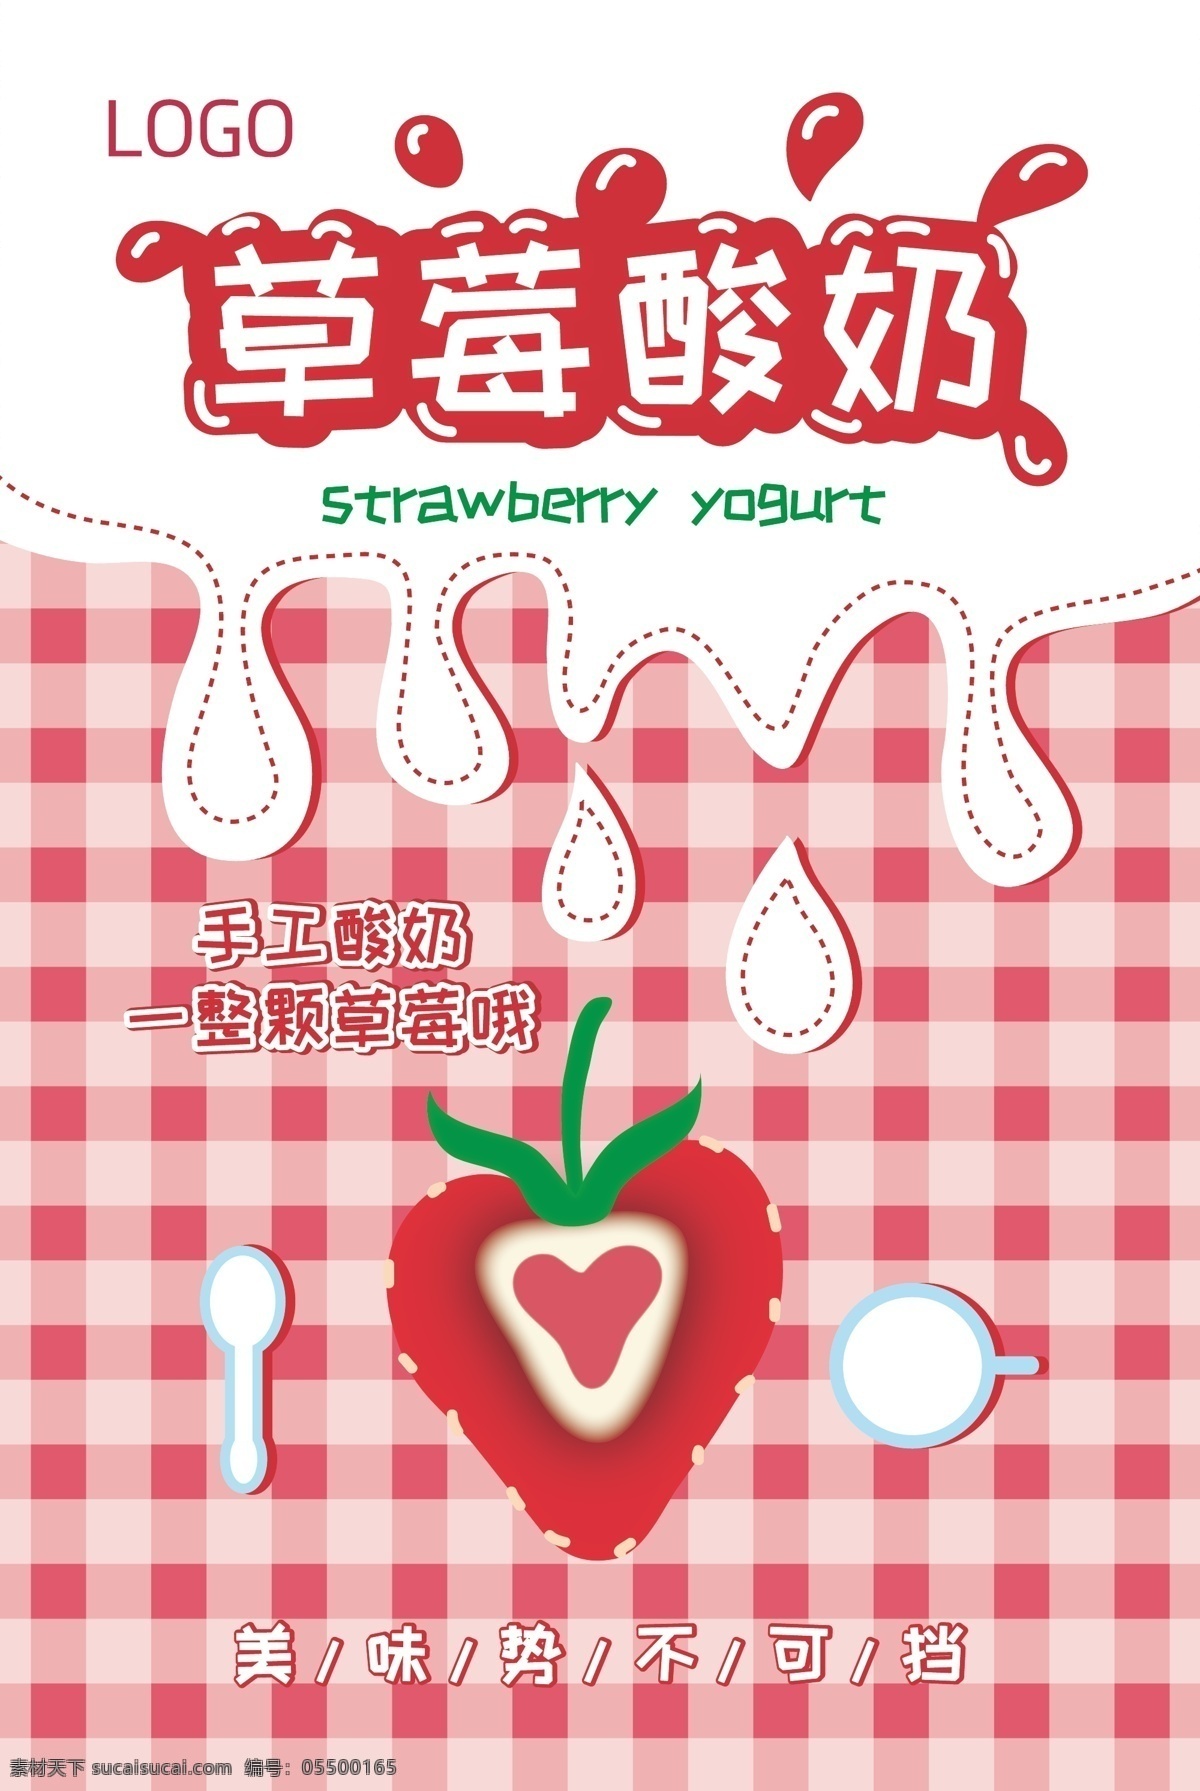 草莓酸奶展板 草莓 酸奶 字体 草莓矢量 勺子 盘子 美味势不可挡 手工酸奶